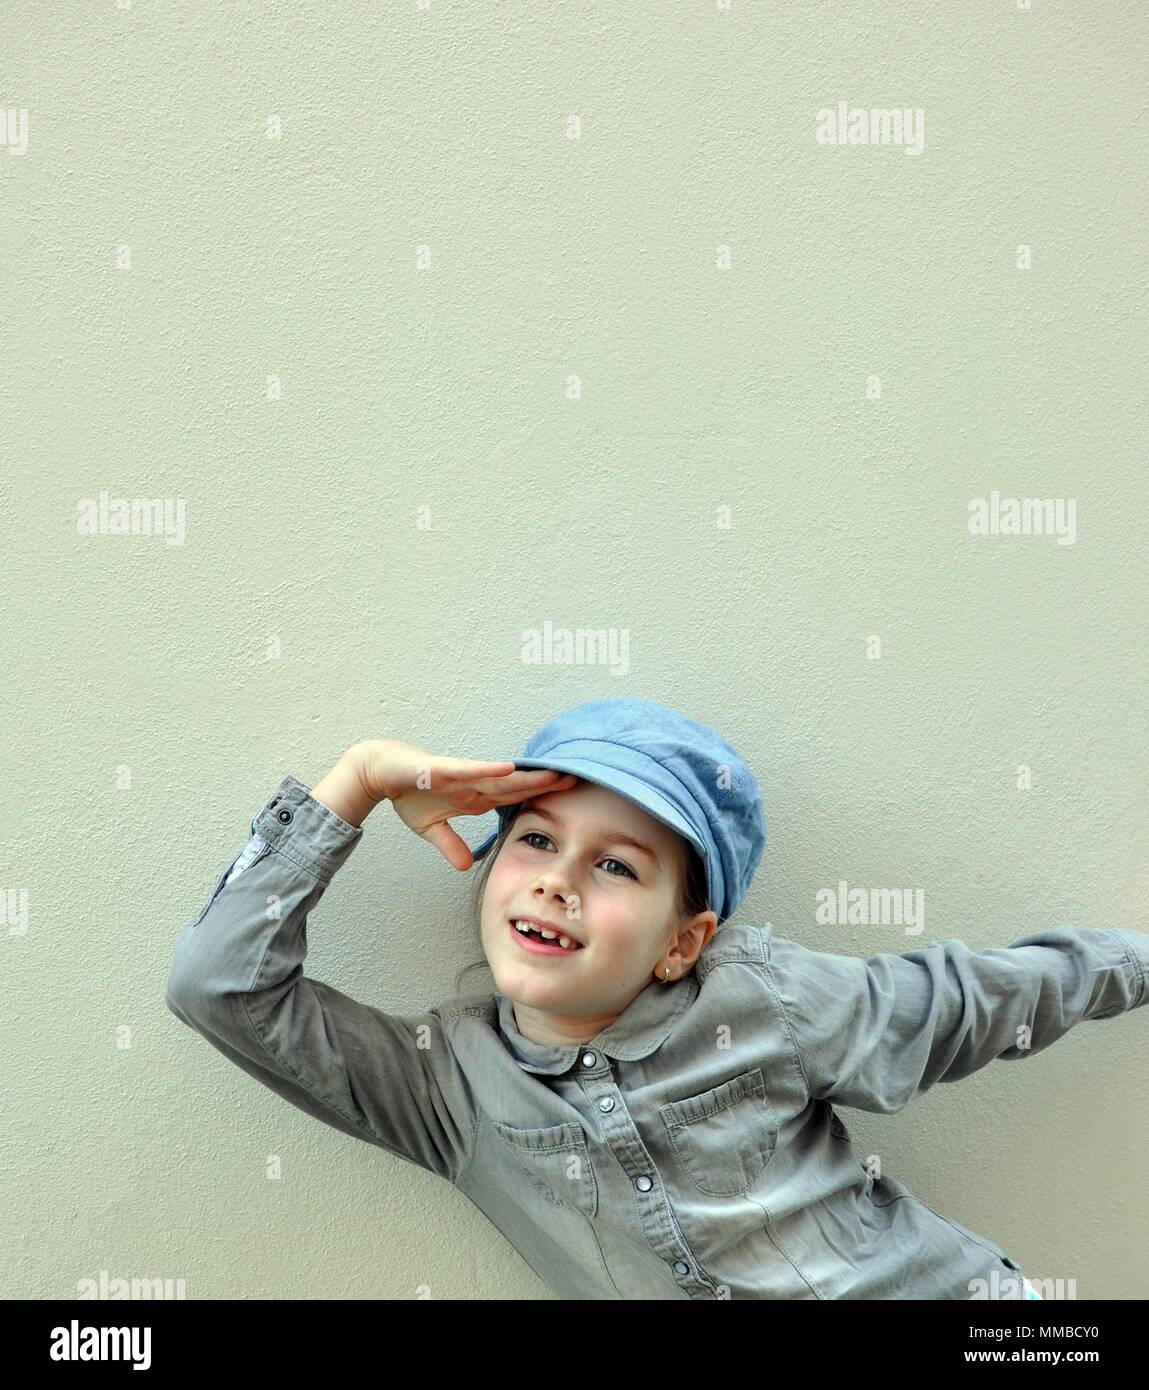 Bambino, ragazza, 8 anni, sorridente e giocando con le mani, guardando in lontananza, vista anteriore verticale, spazio di copia Foto Stock